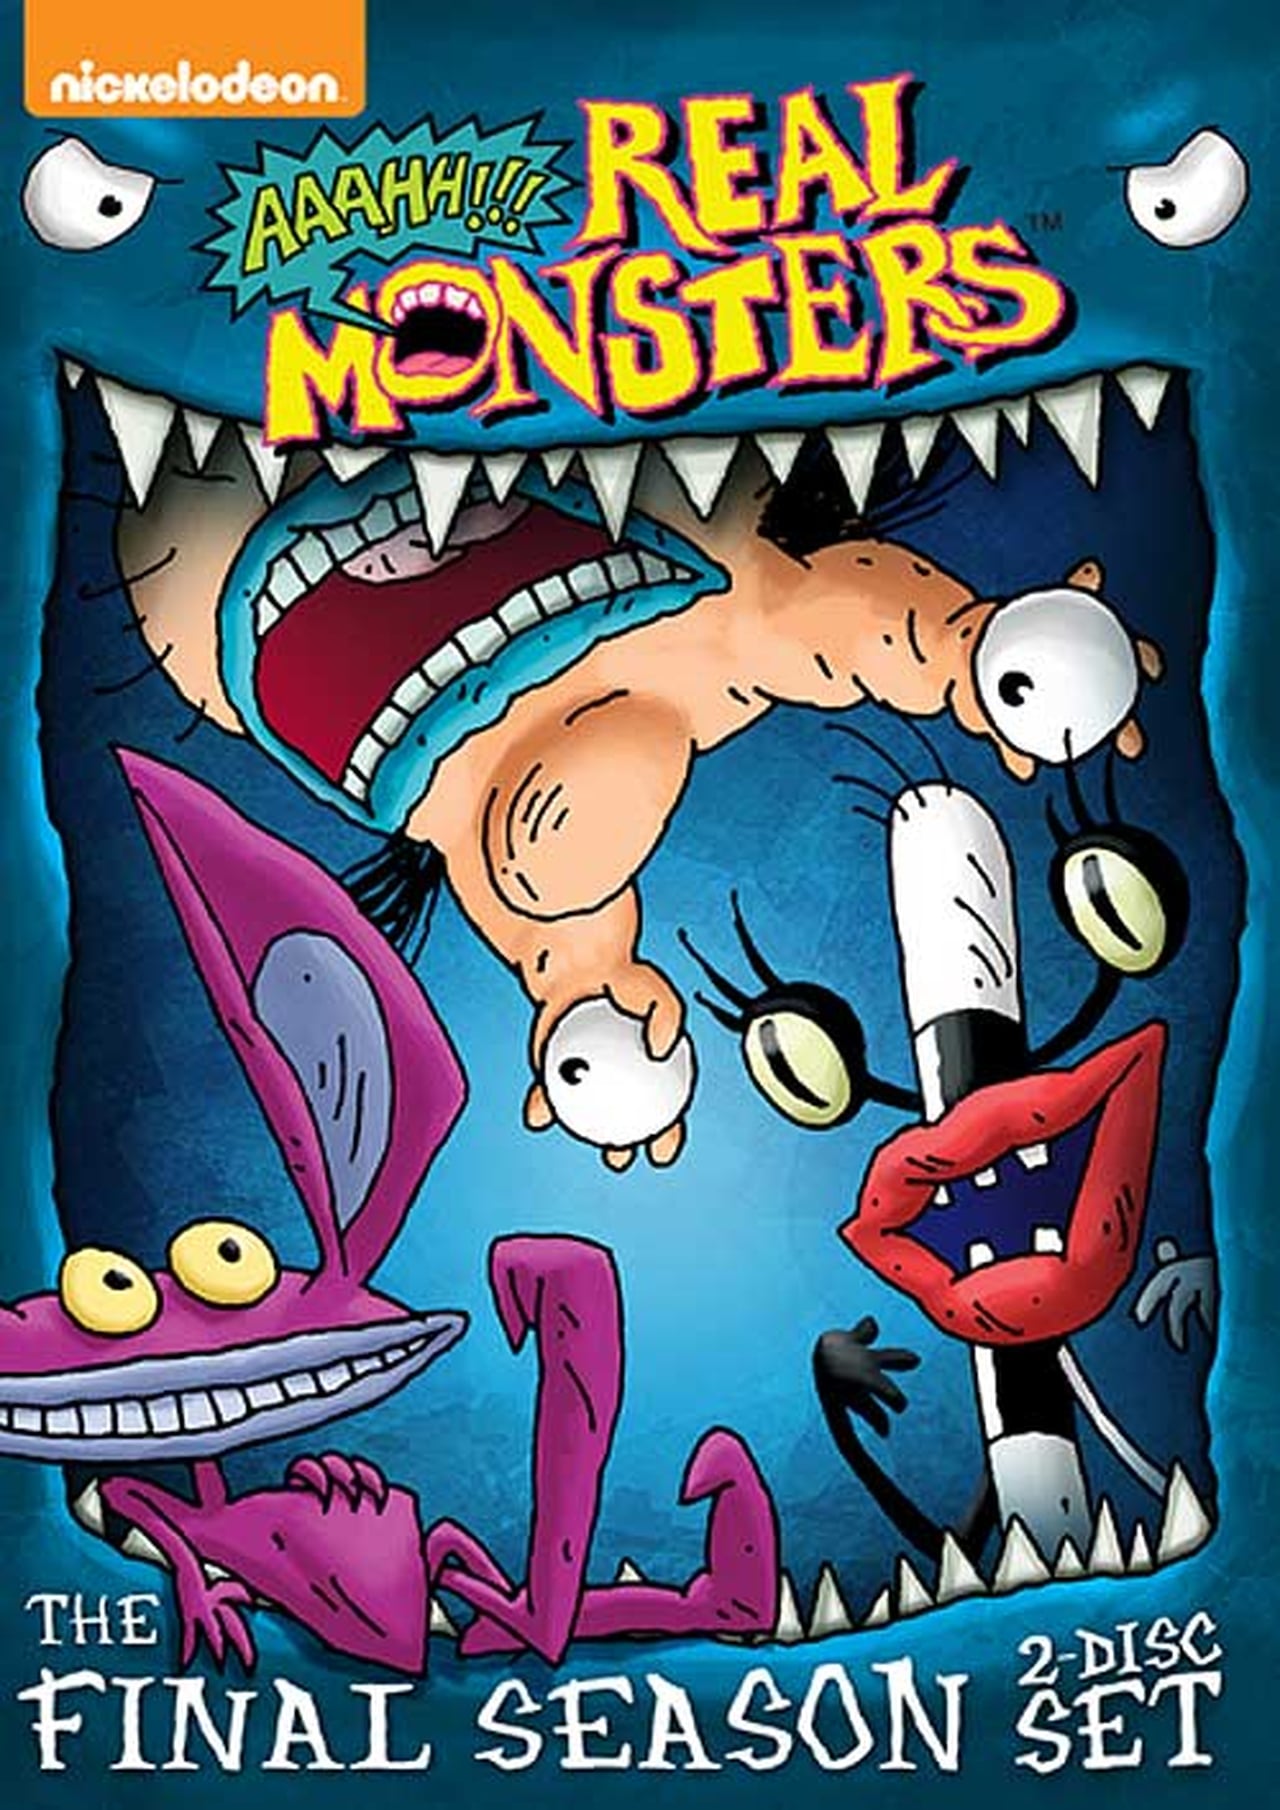 Aaahh!!! Real Monsters Season 4